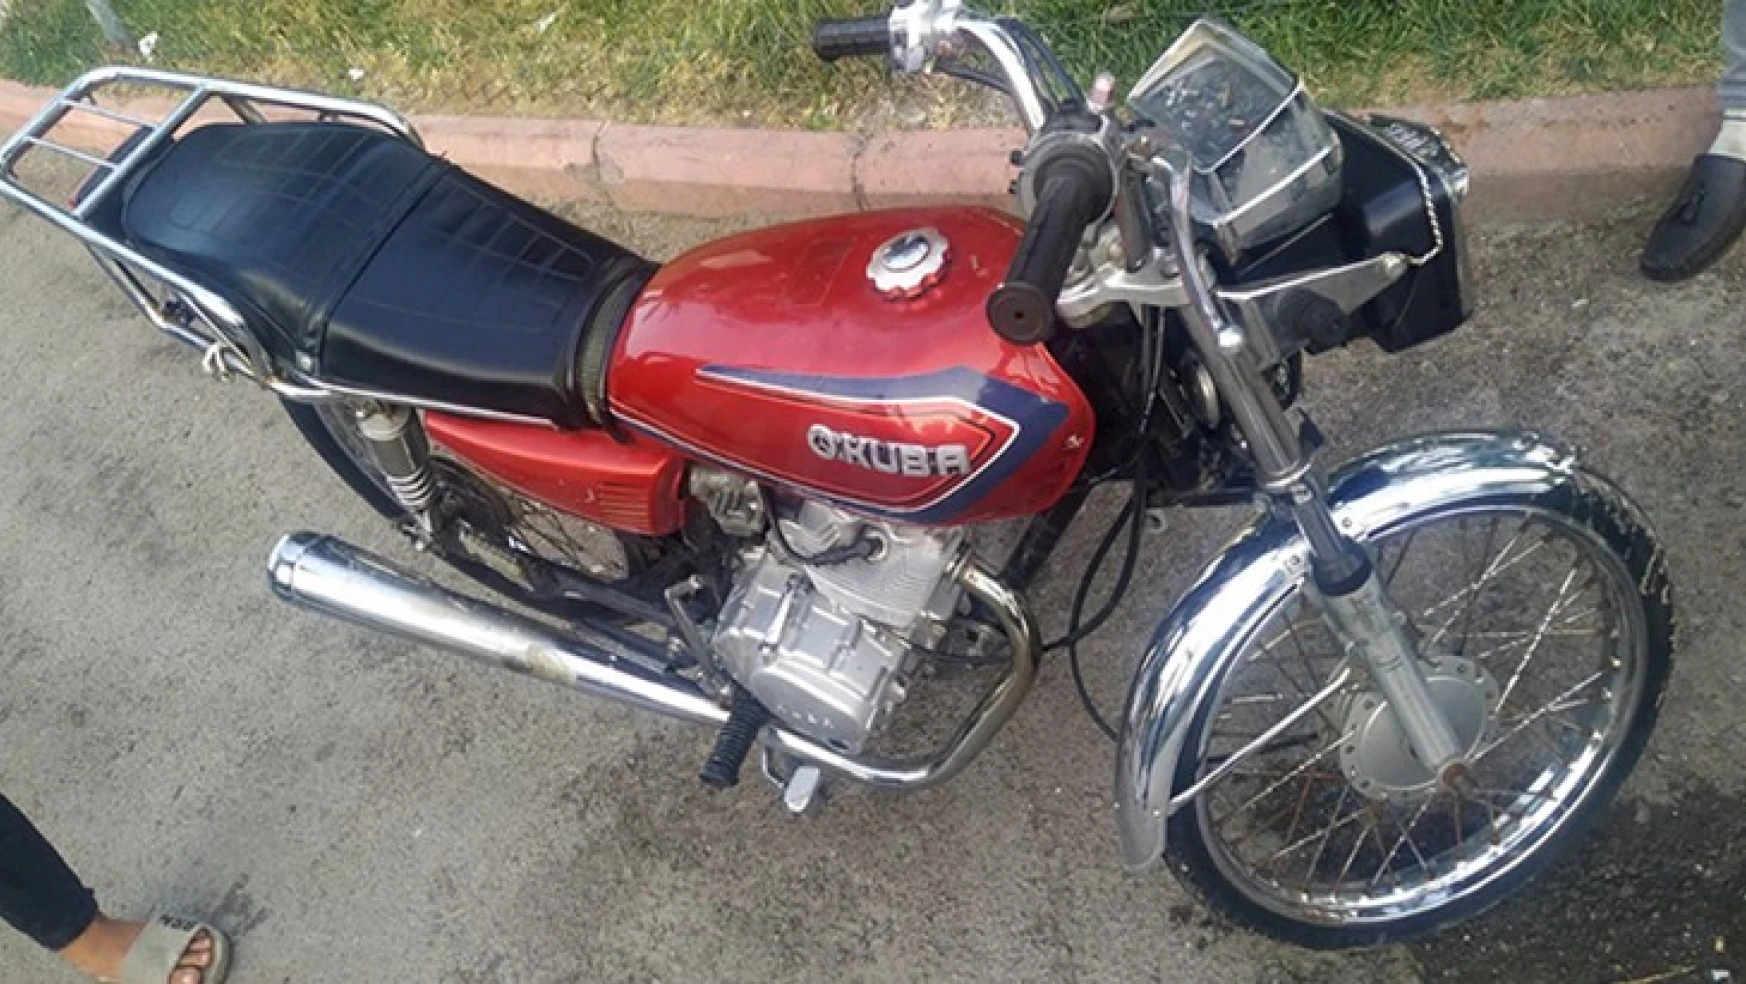 Kahramanmaraş'ta motosiklet hırsızlığı: 1 Tutuklama